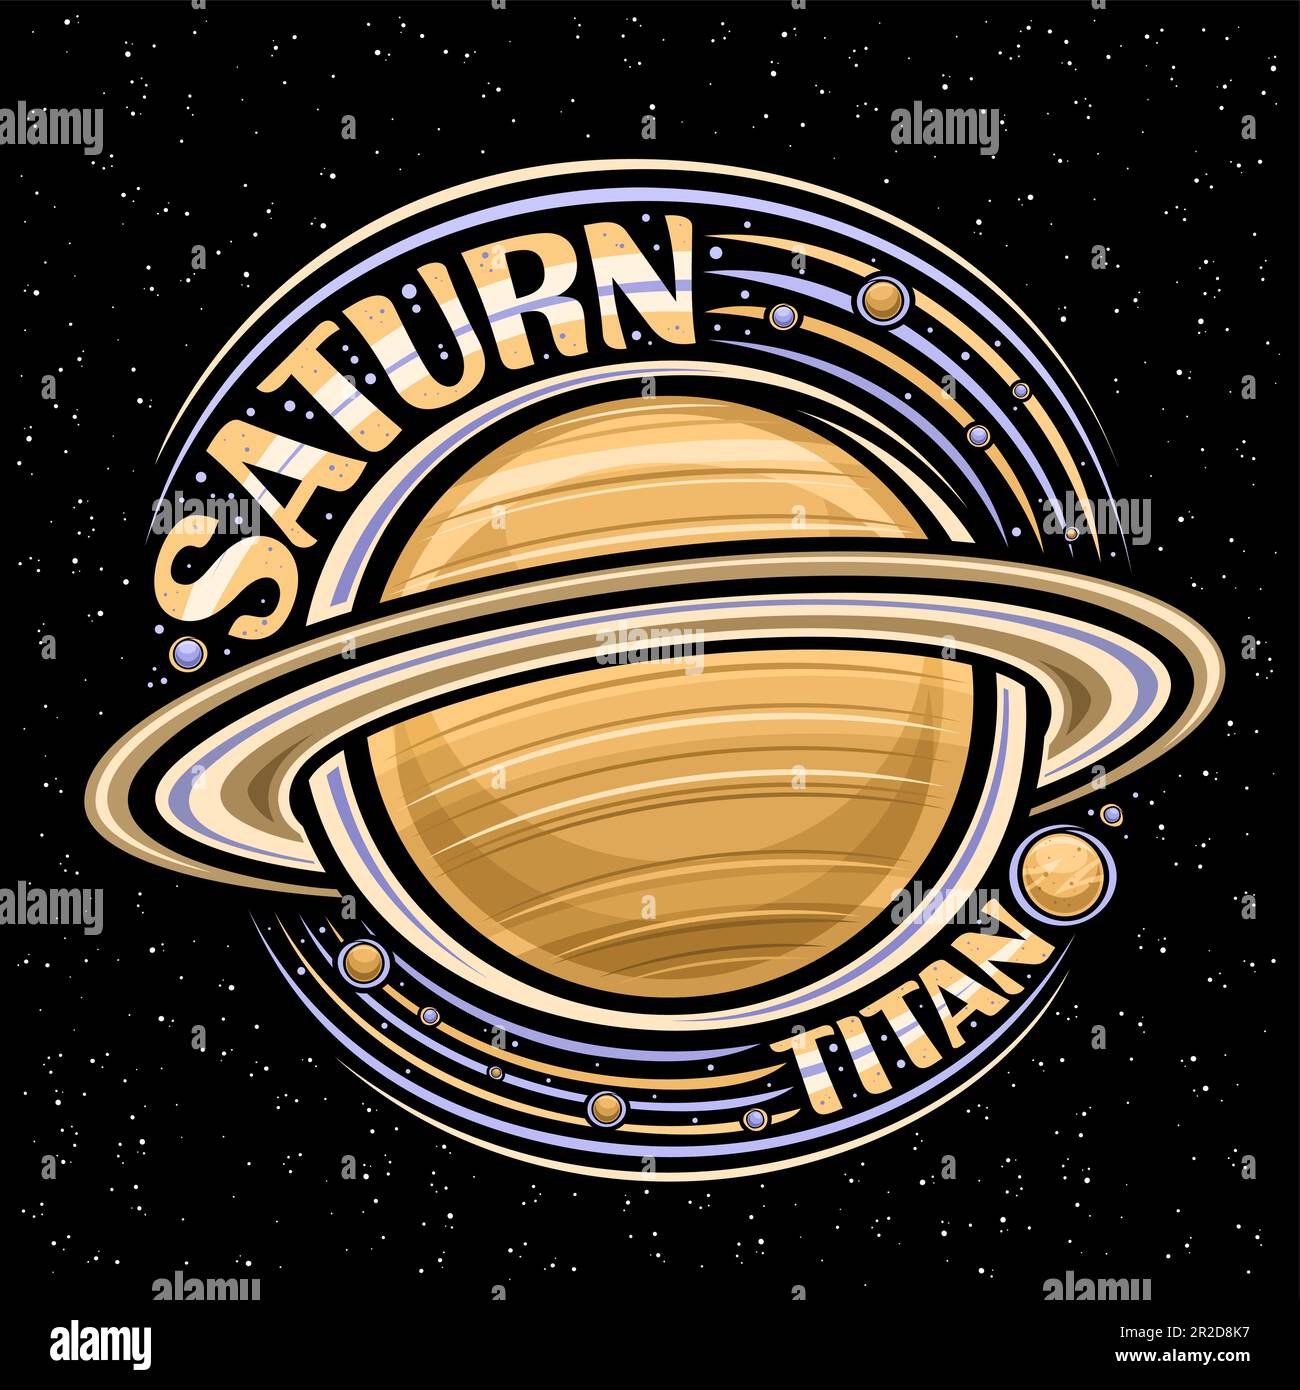 Logo vettoriale per Saturno, stampa fantasy decorativa con pianeta rotante saturno e molte lune, superficie ventosa a gas, etichetta cosmo rotonda con scritte uniche Illustrazione Vettoriale